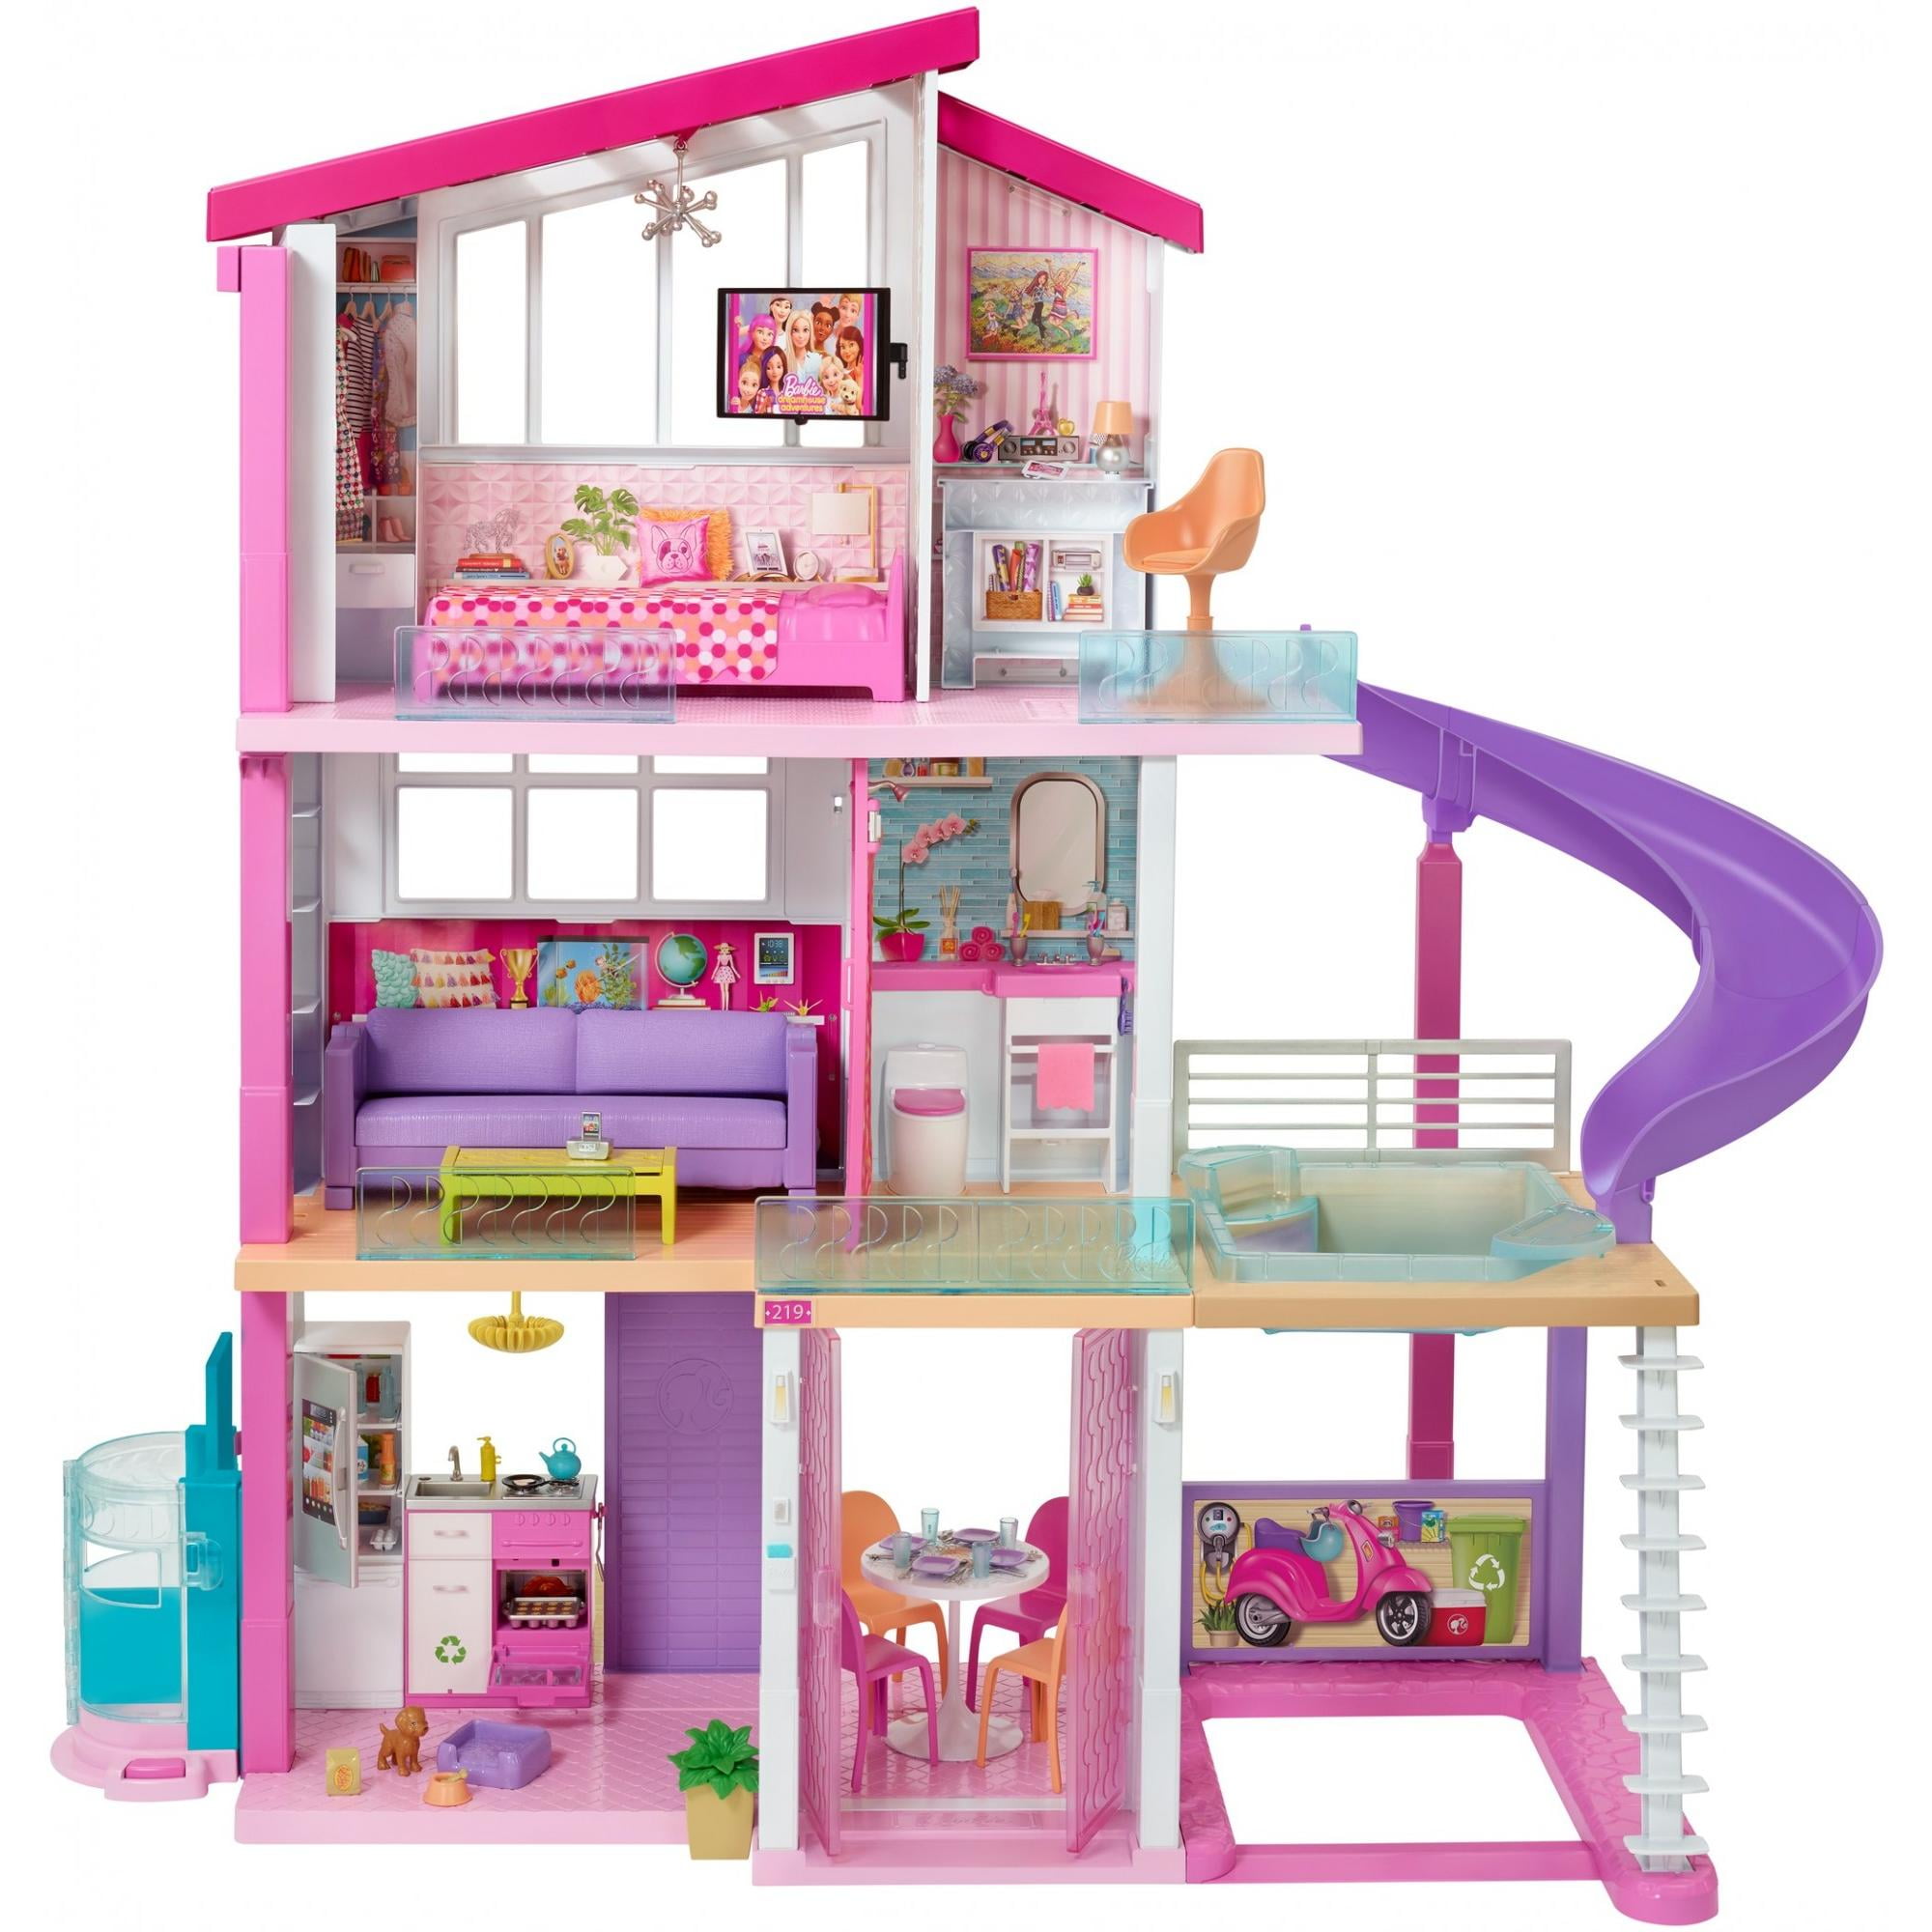 Wooden dollhouse avec ascenseur Dream Doll House for little girls 5 Year Olds 